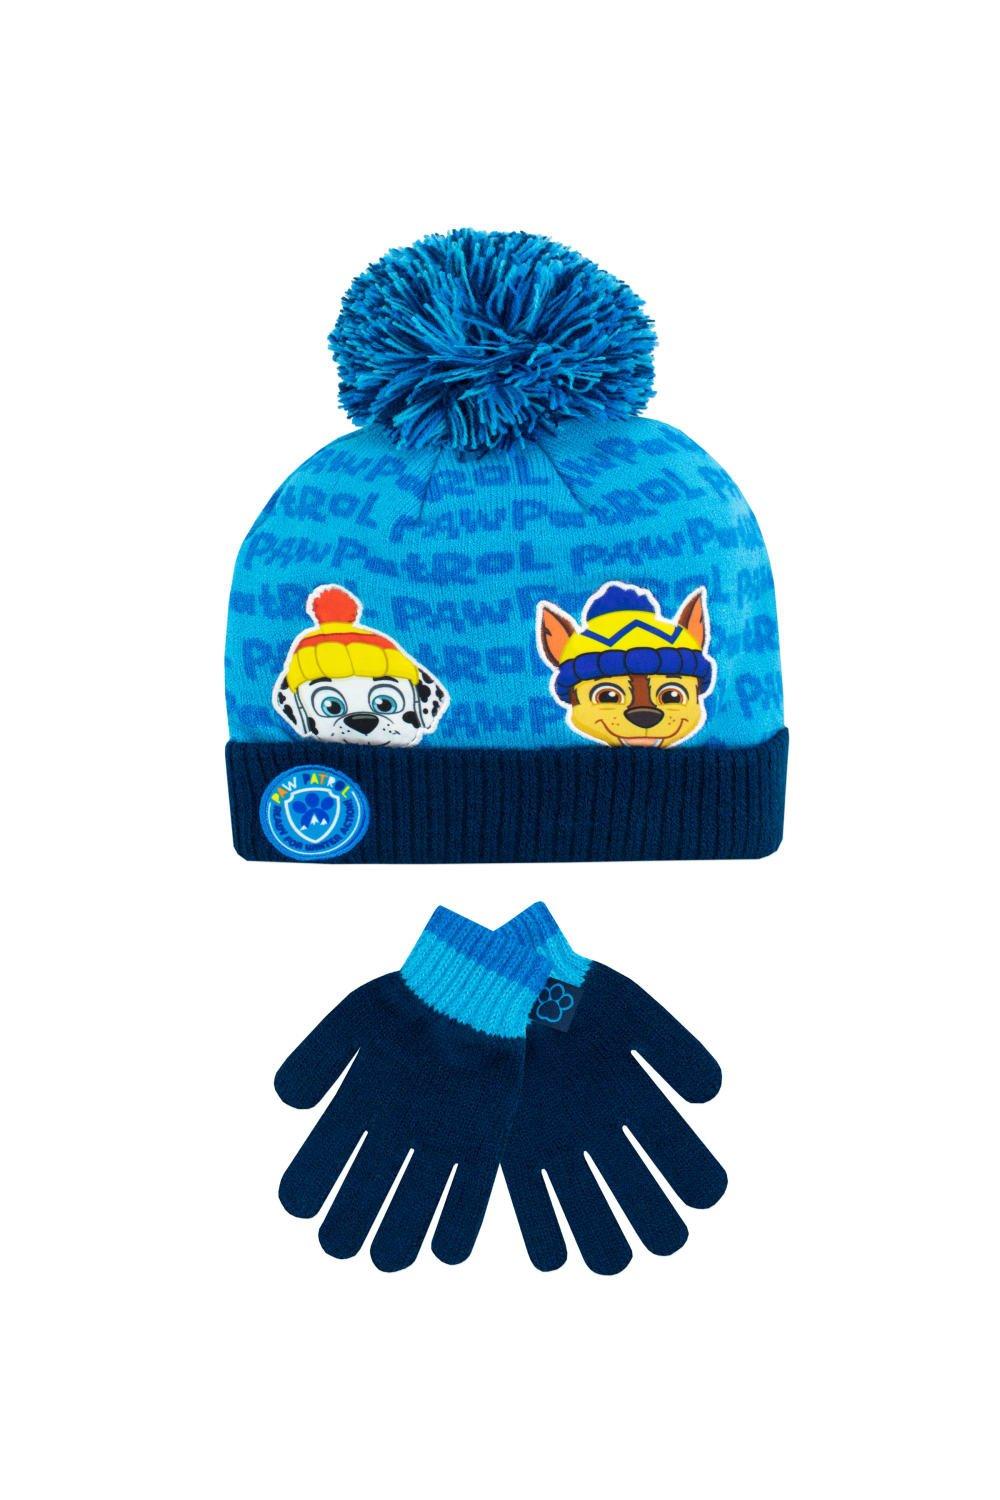 шапка modniki для мальчиков и девочек с помпоном р56 темно серо черная Детский комплект шапки и перчаток Paw Patrol, синий